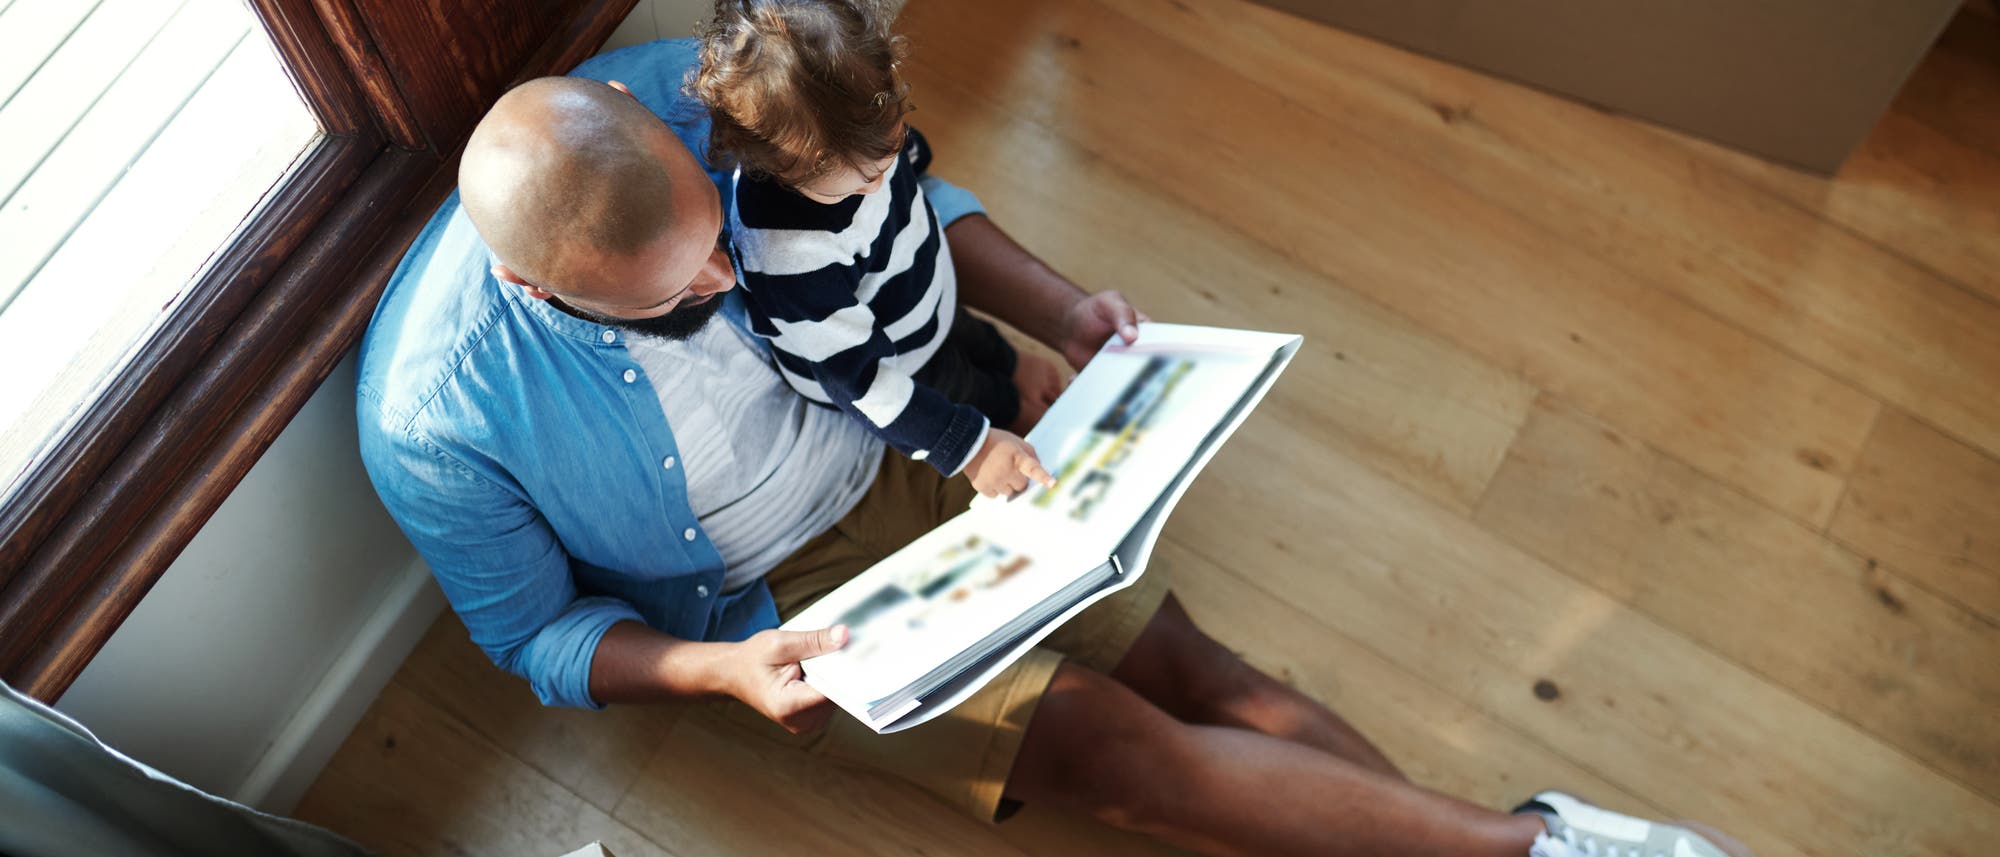 Vater betrachtet mit seinem Kind ein Buch